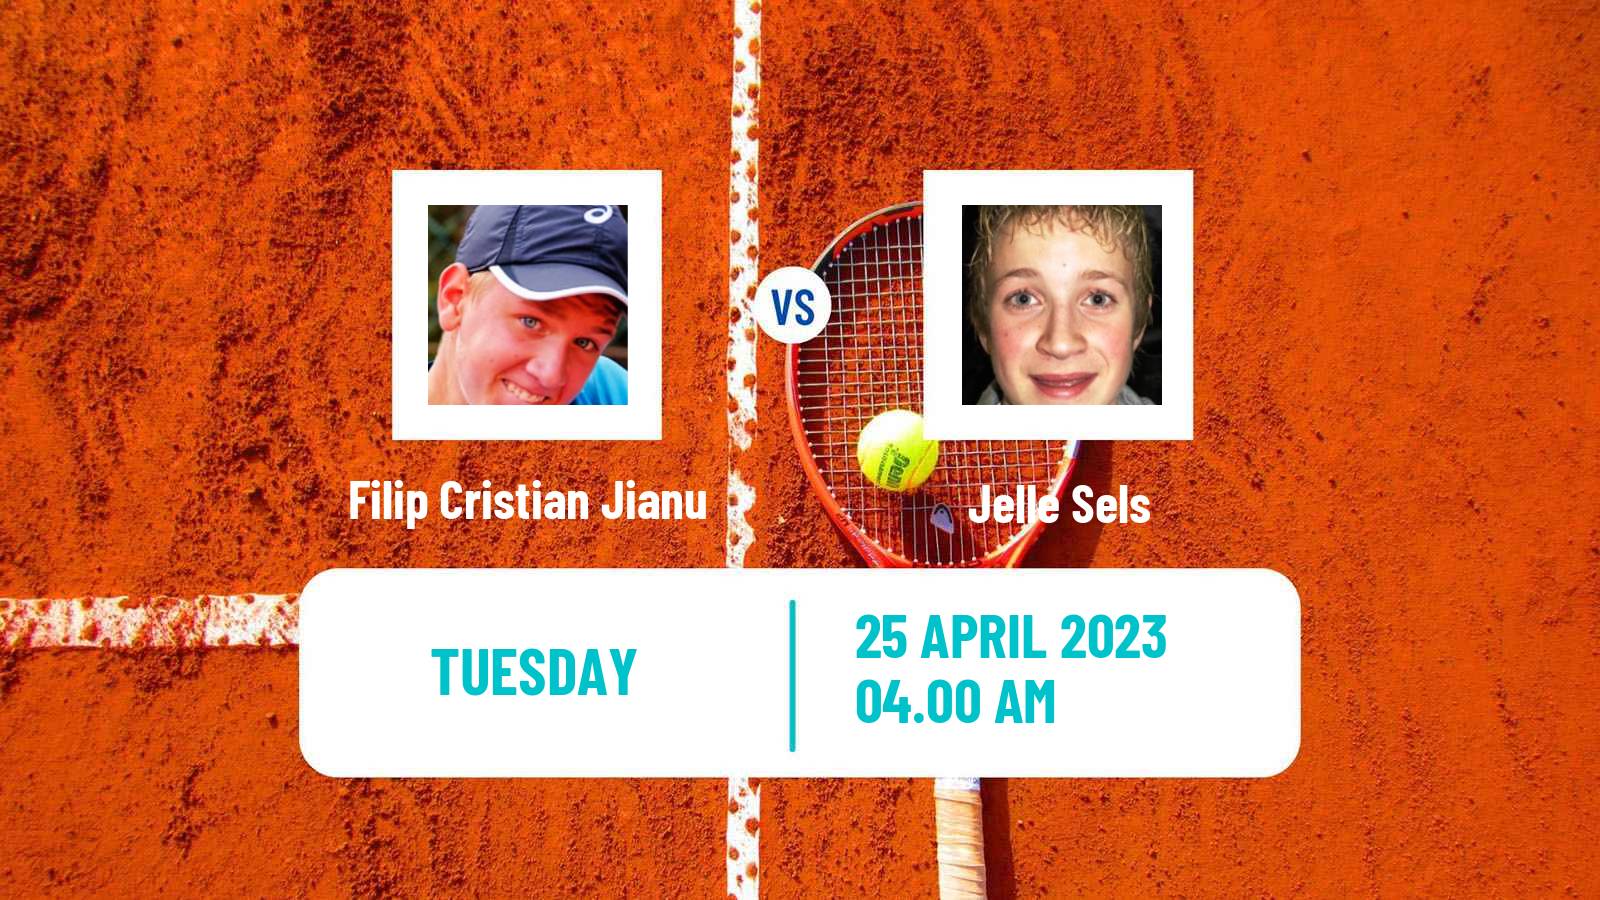 Tennis ATP Challenger Filip Cristian Jianu - Jelle Sels